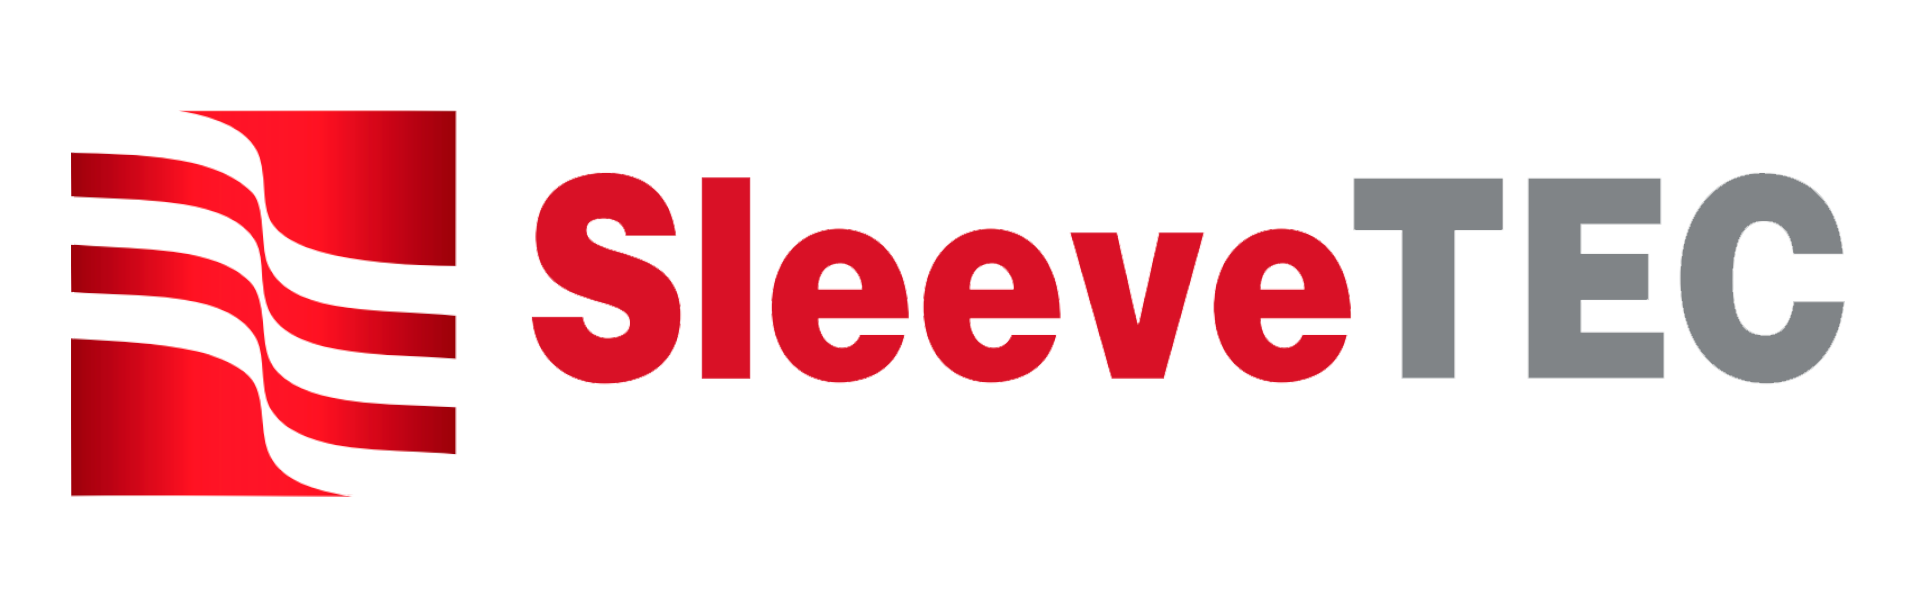 SleeveTec